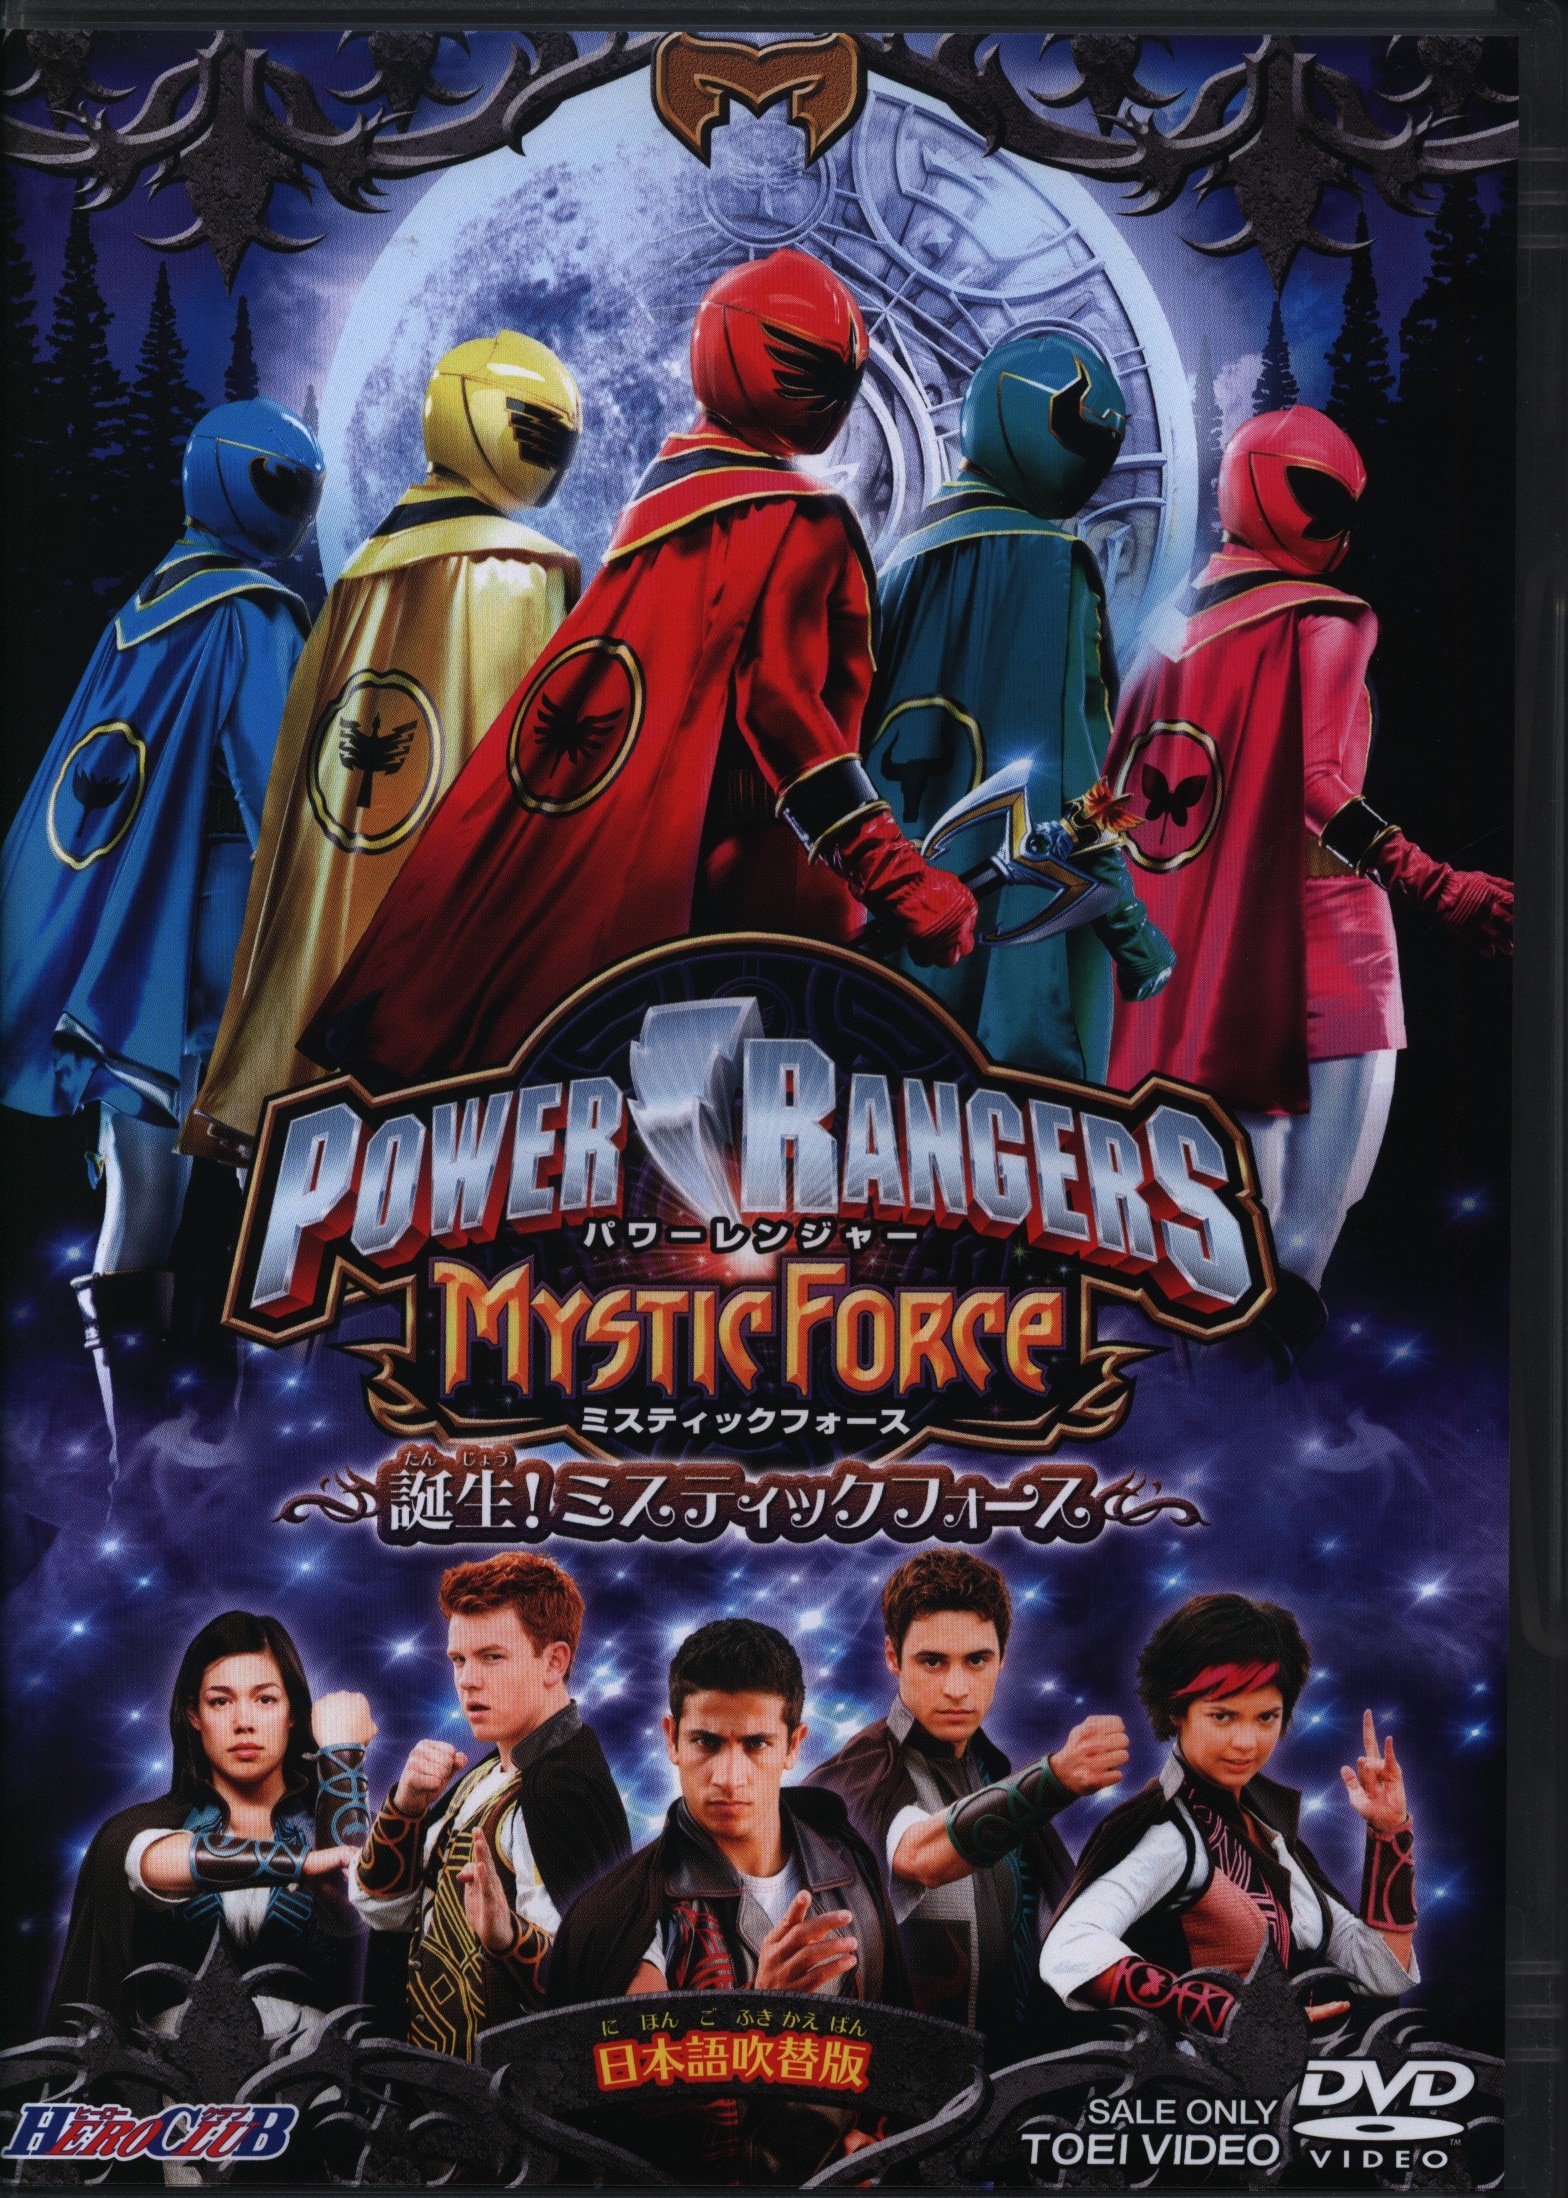 ヒーロークラブ POWER RANGERS MYSTIC FORCE 誕生! ミスティックフォース 【DVD】 tf8su2k